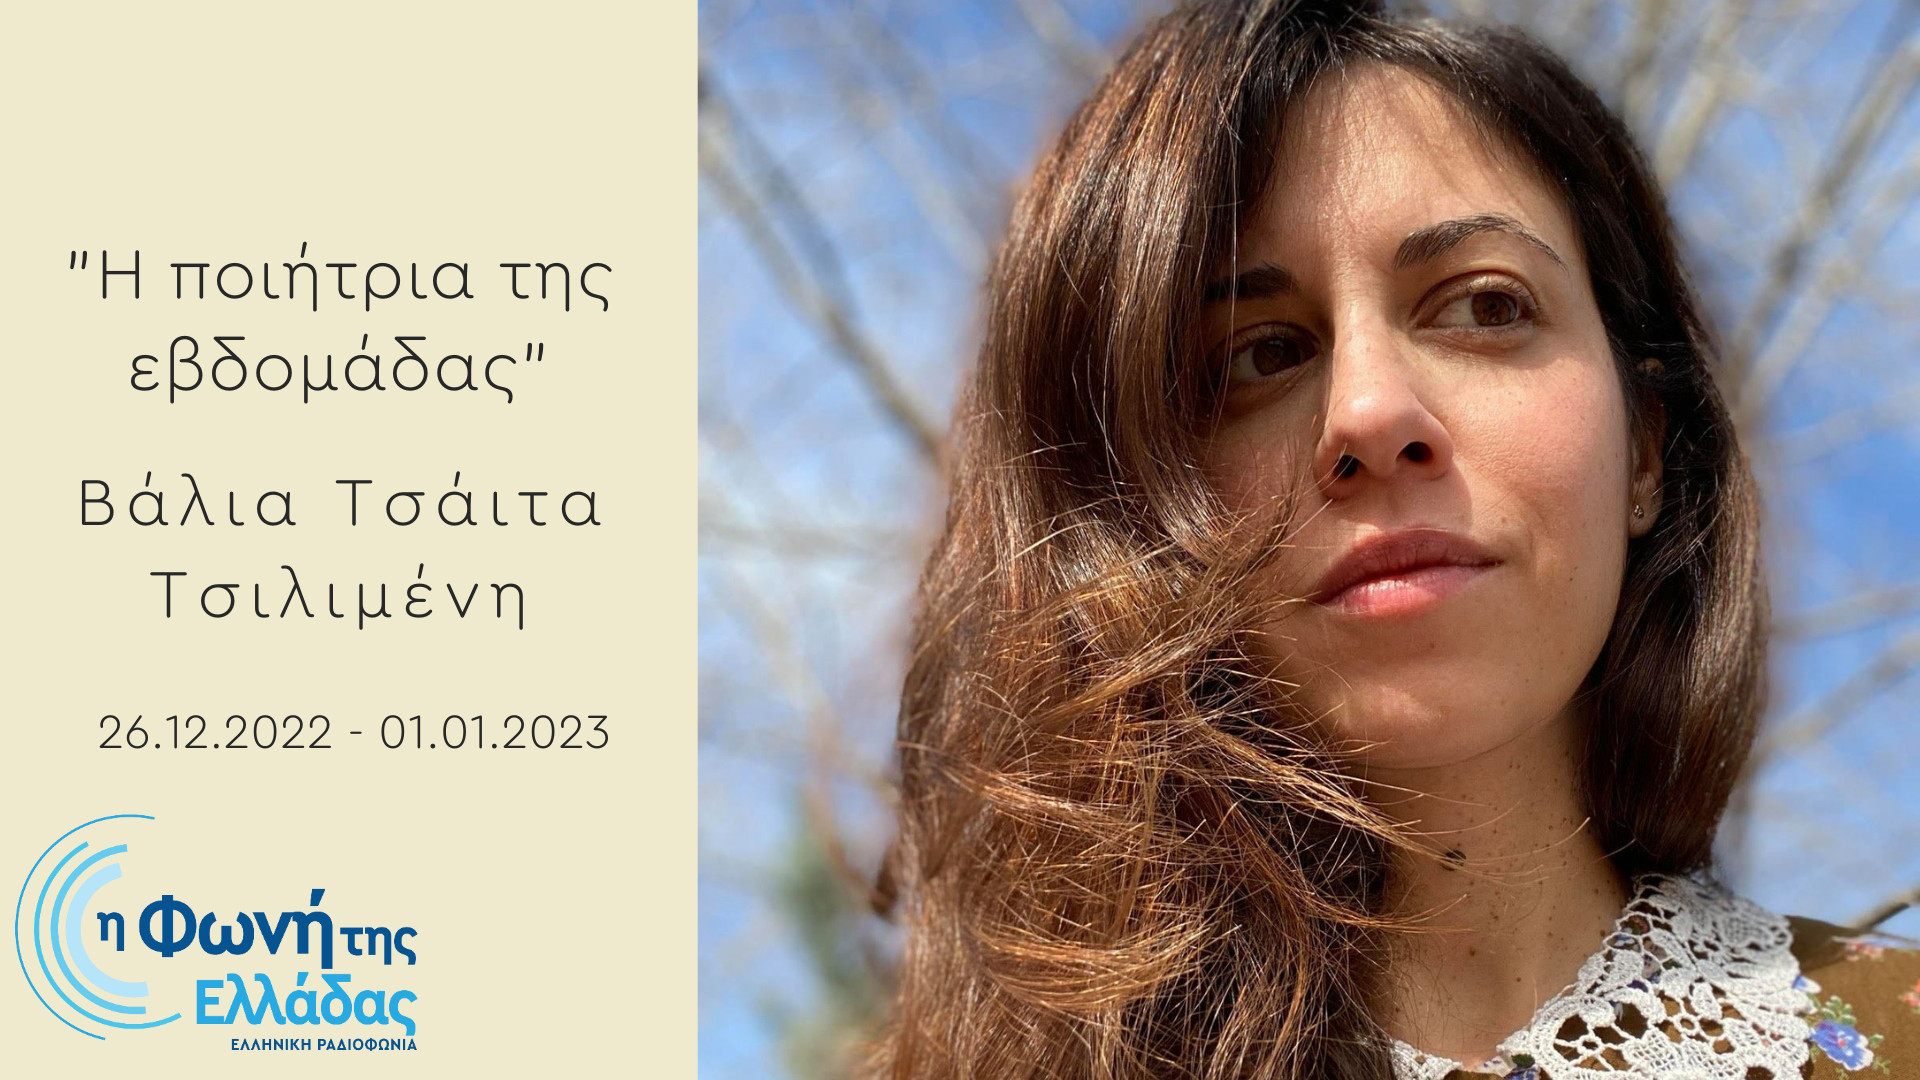 Η Φωνή της Ελλάδας – Η Βάλια Τσάιτα Τσιλιμένη είναι «Η ποιήτρια της εβδομάδας»